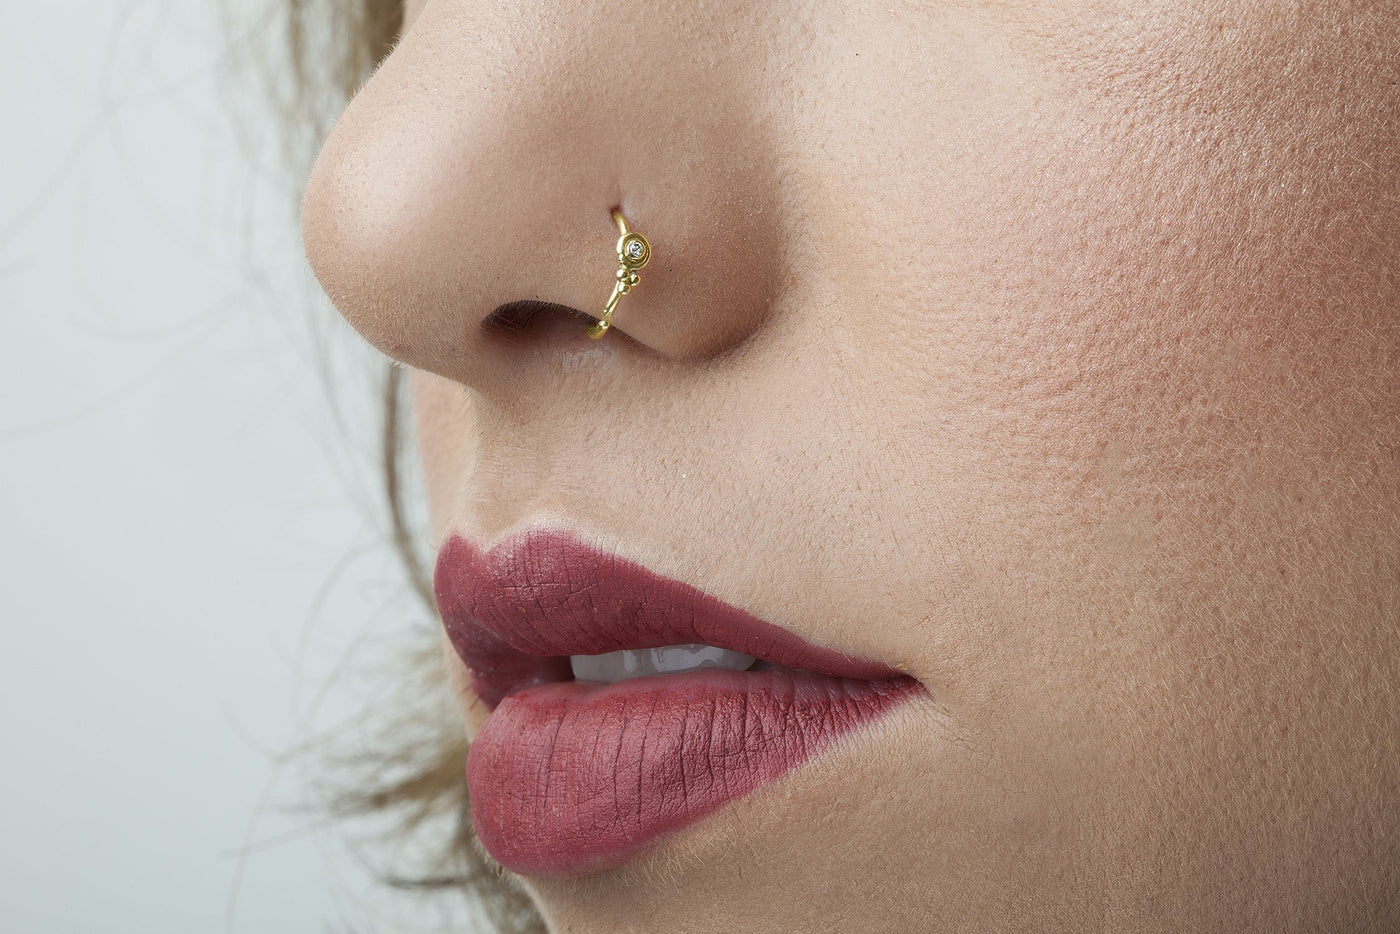 Snug Nose Ring Hoop | 6mm 7mm 8mm 9mm Simple Thin Nose Hoop | IB Jewelry